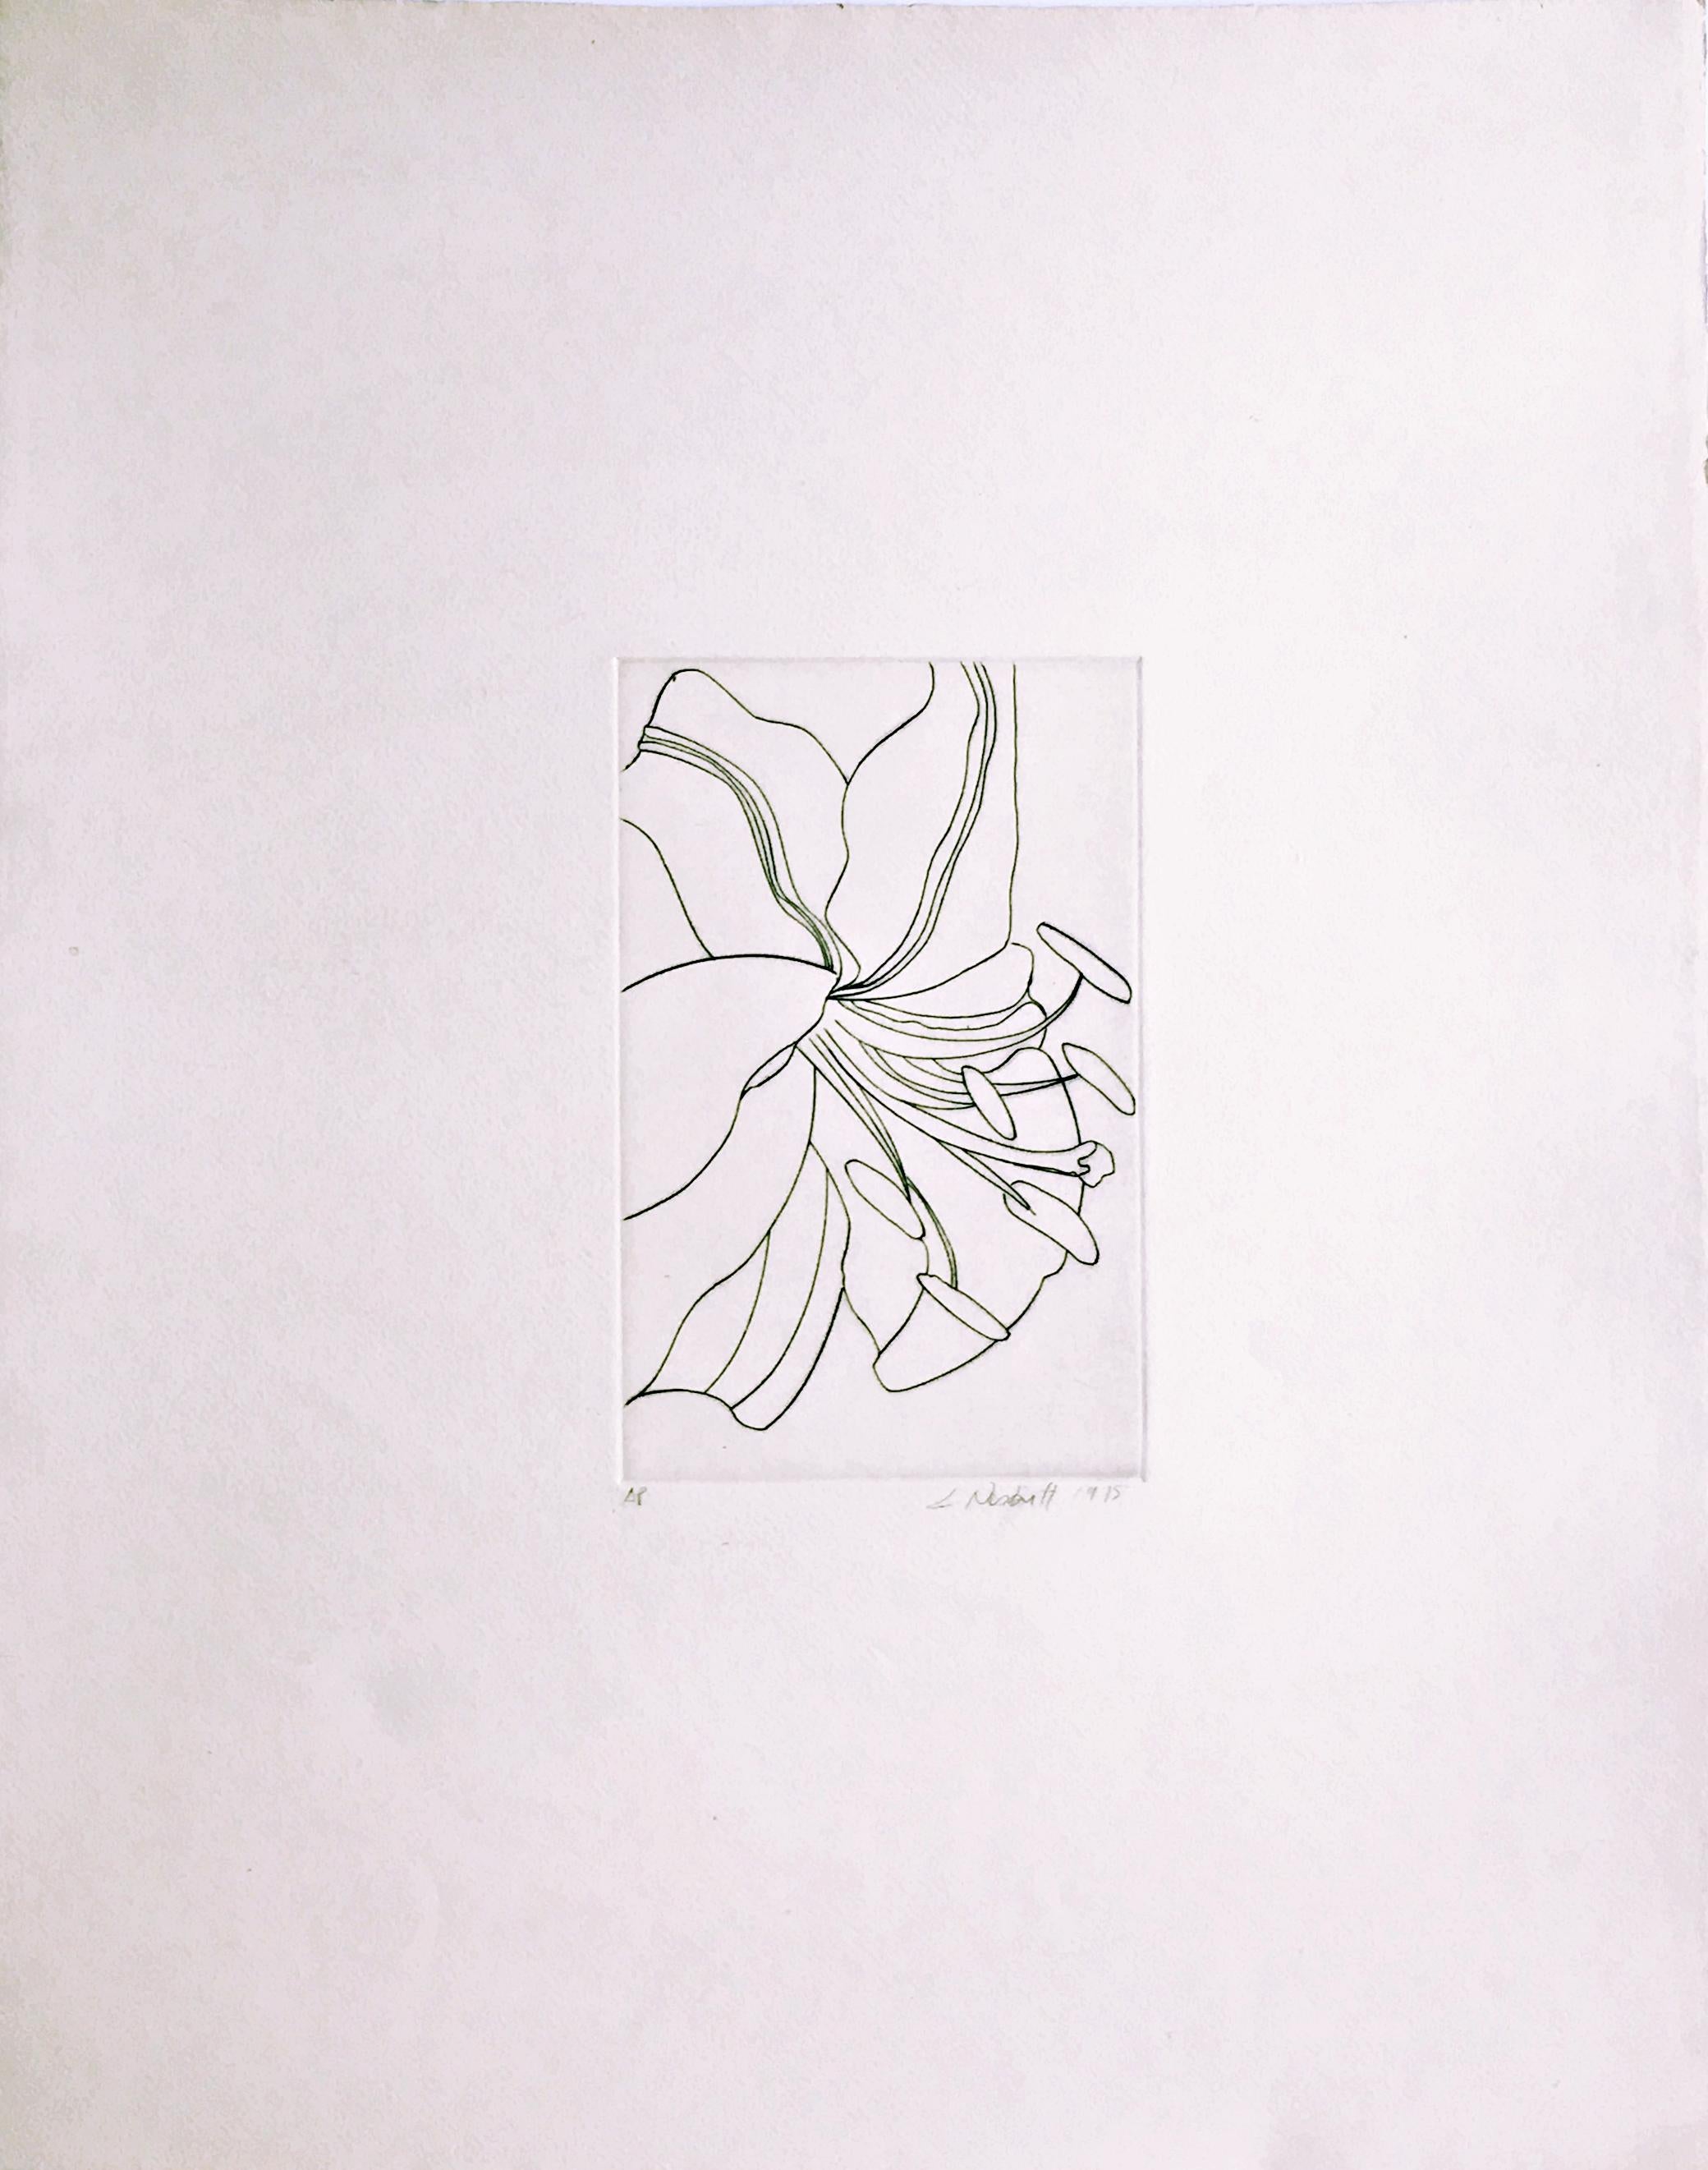 Lowell Nesbitt
Blume ohne Titel, 1975
Radierung auf Velinpapier
Handsigniert, nummeriert AP und datiert auf der Vorderseite
24 × 19 Zoll
Ungerahmt
Die ergreifende und exquisit ausgeführte Radierung einer Blume von Lowell Nesbitt ist ein schönes